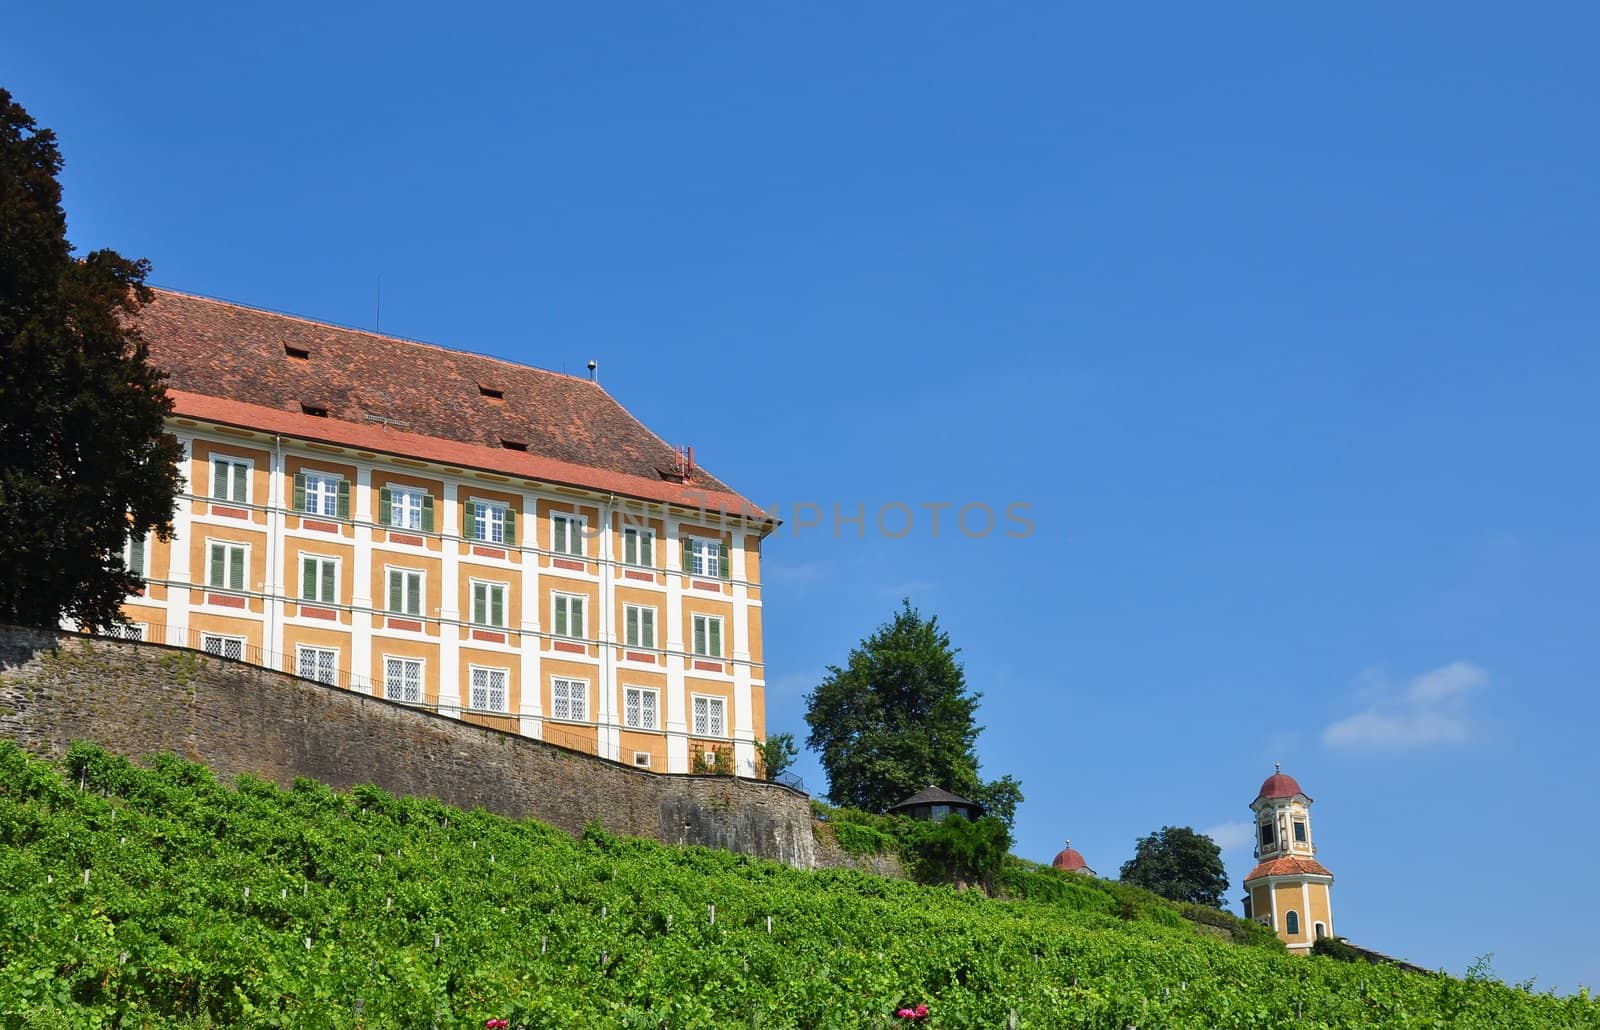 Vineyard at Castle Stainz, Styria, Austria